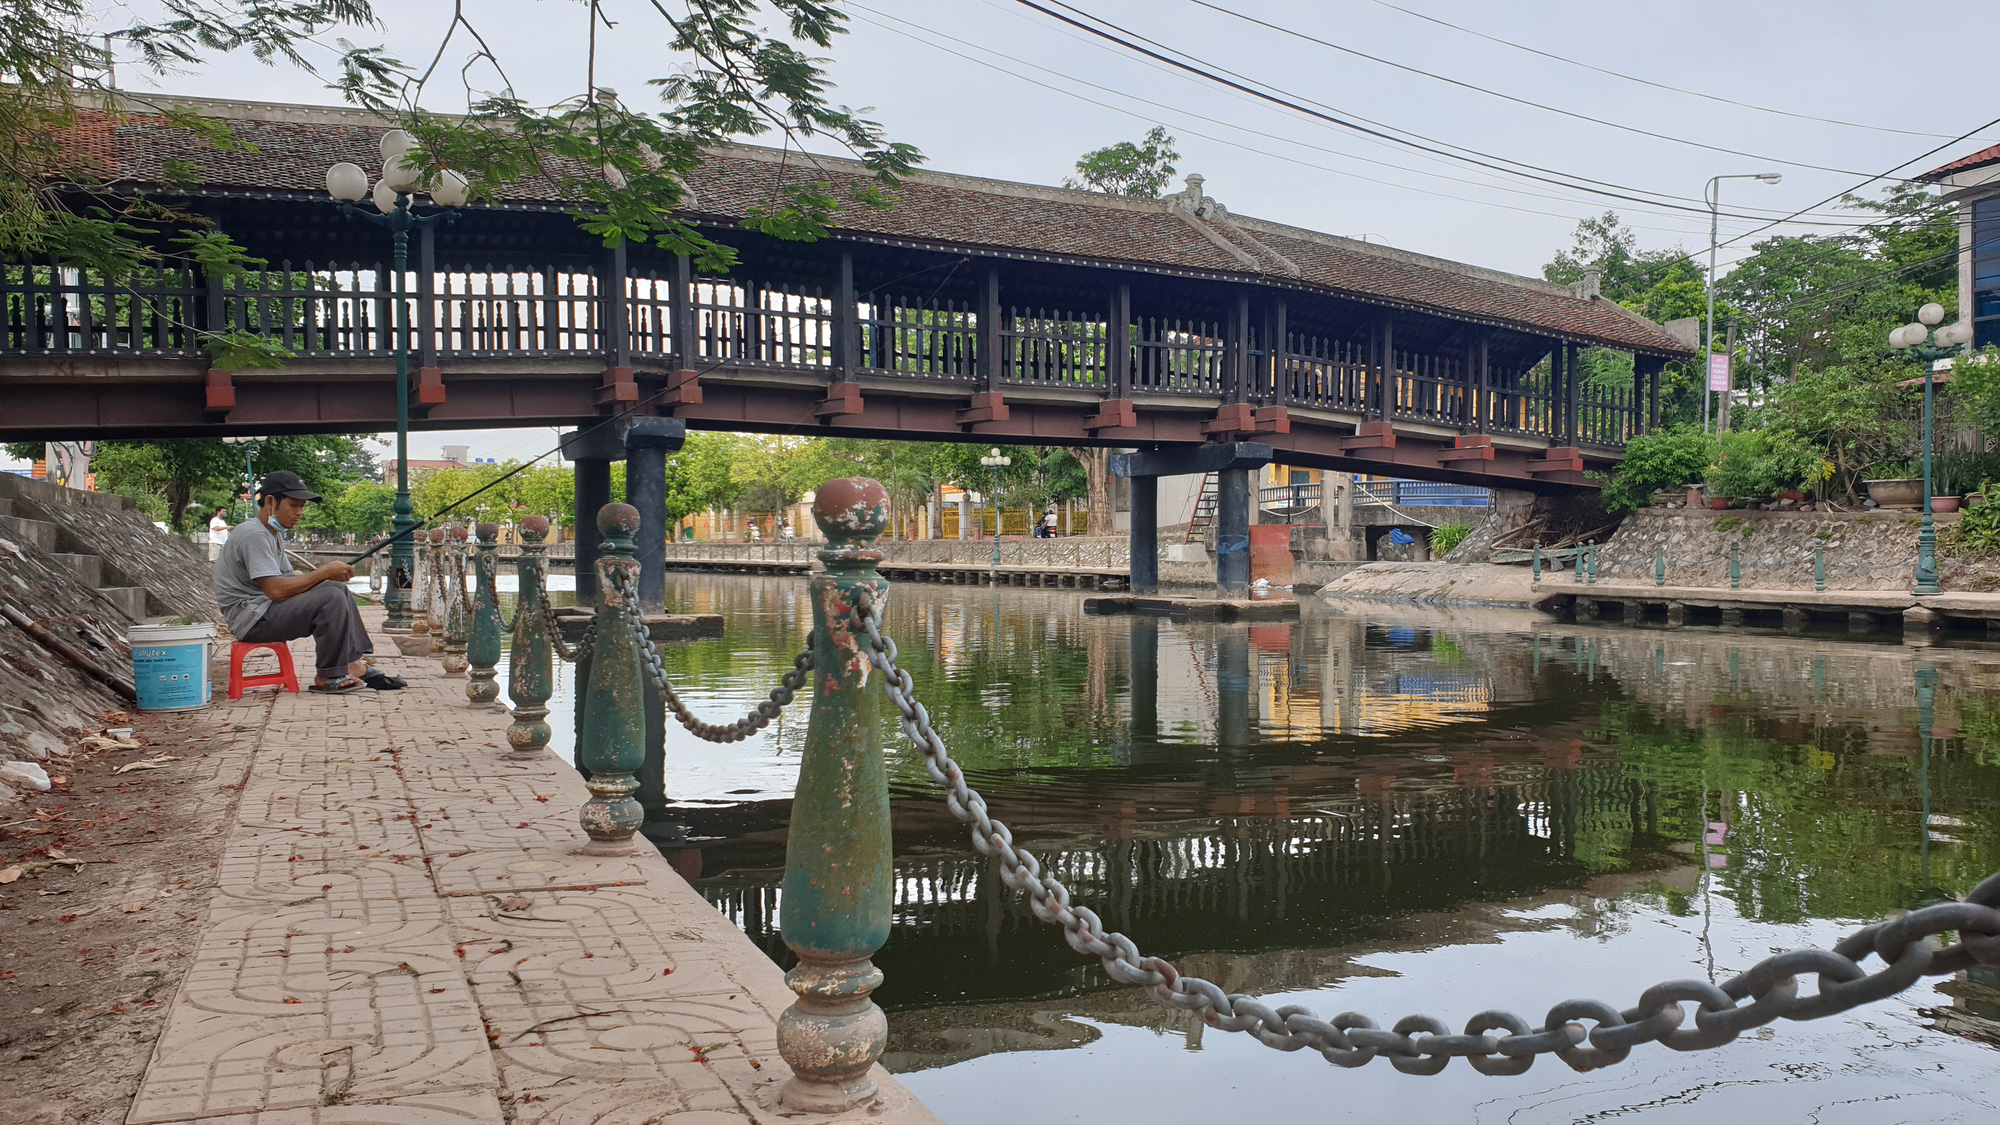 Cầu ngói Phát Diệm gắn với tên tuổi danh nhân Nguyễn Công Trứ giờ ...